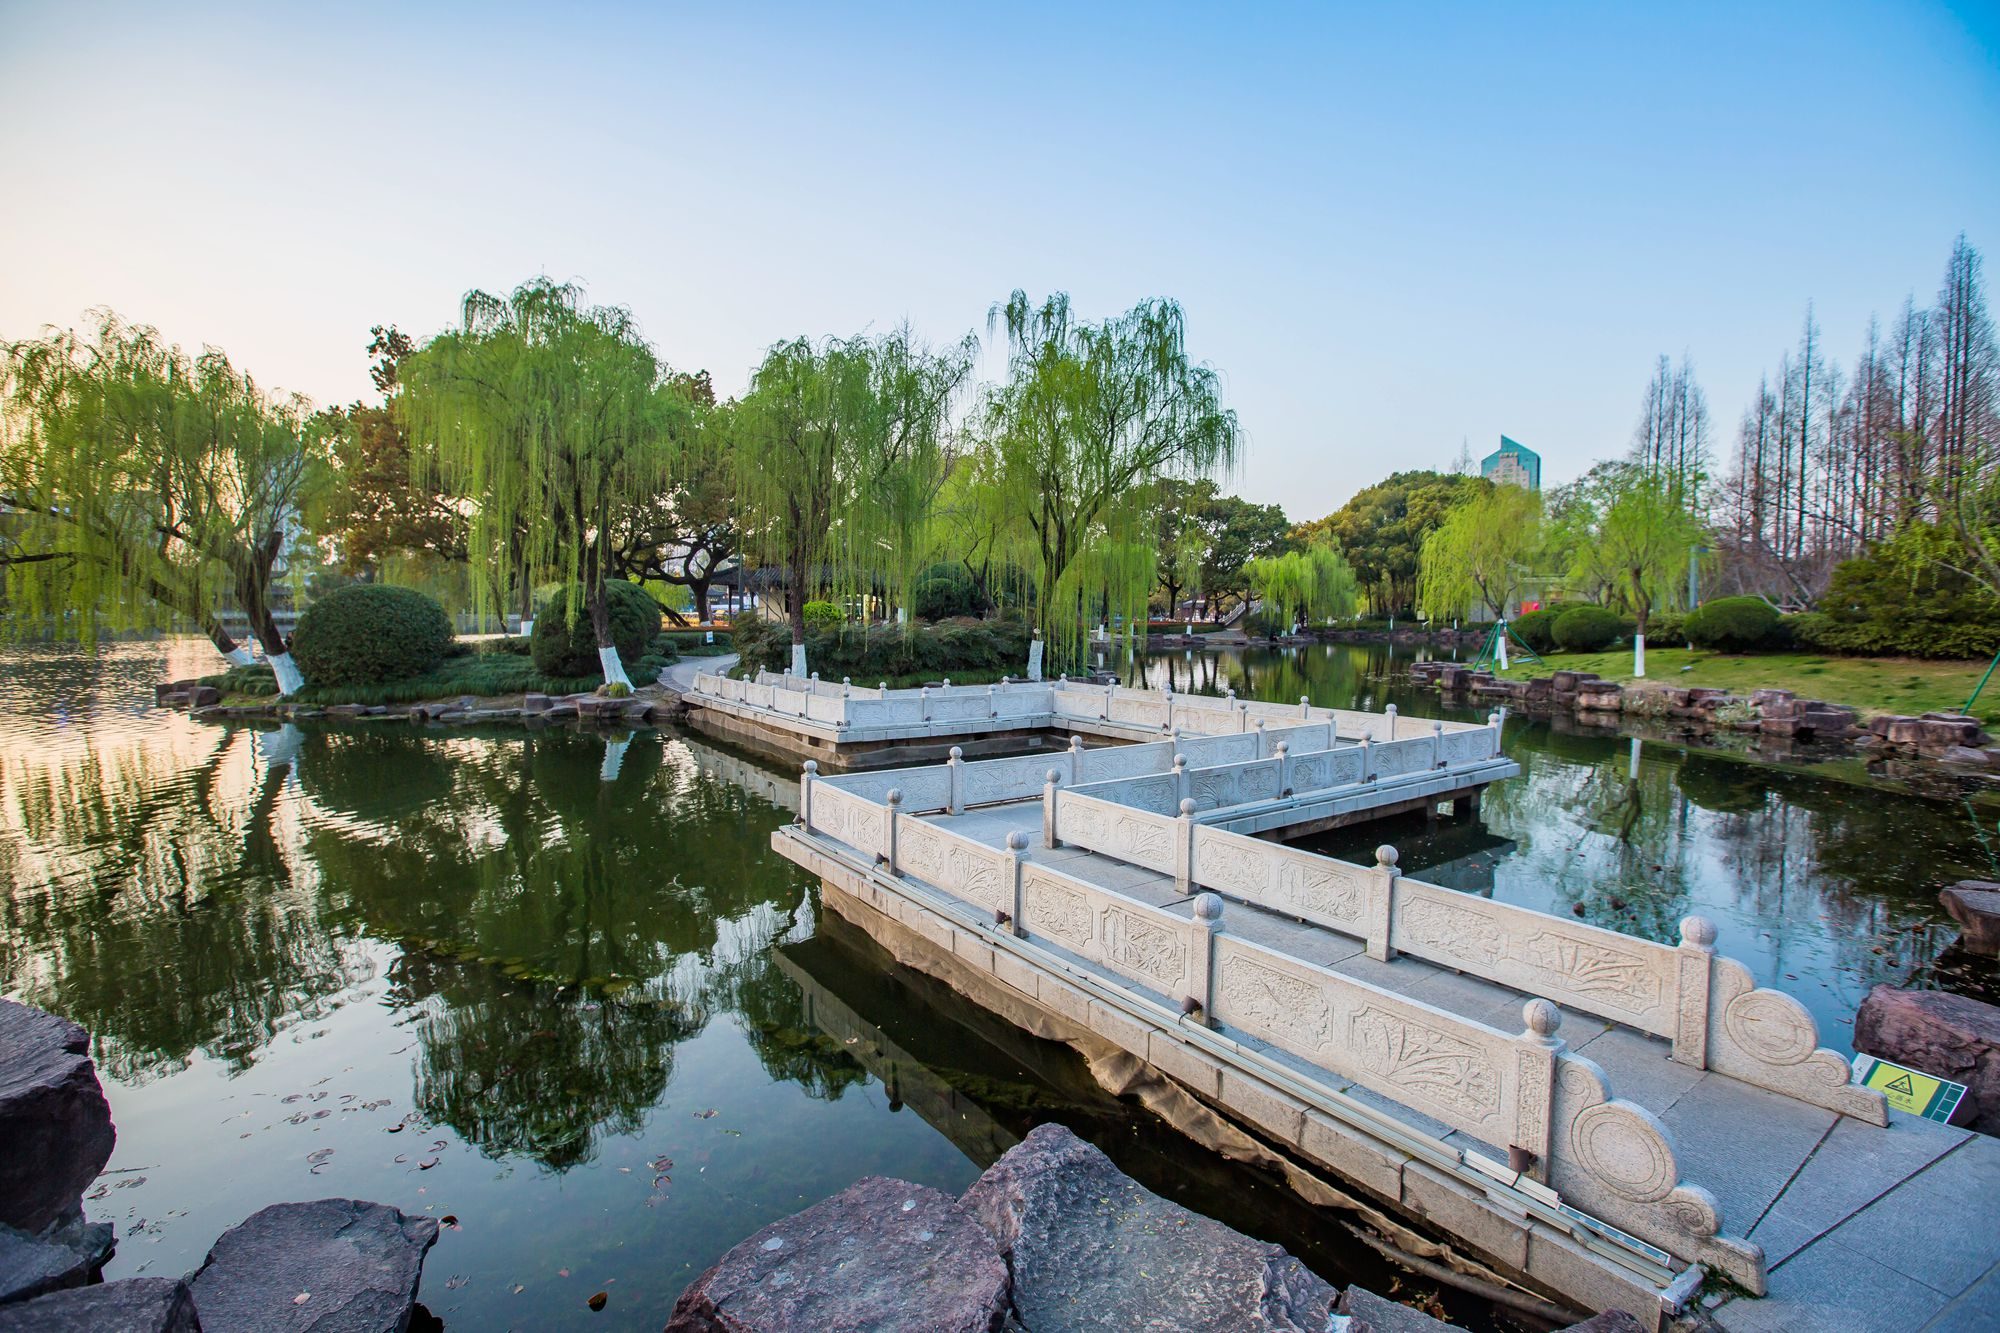 宁波月湖公园,被誉为宁波小西湖,是一处不收门票的5a景区